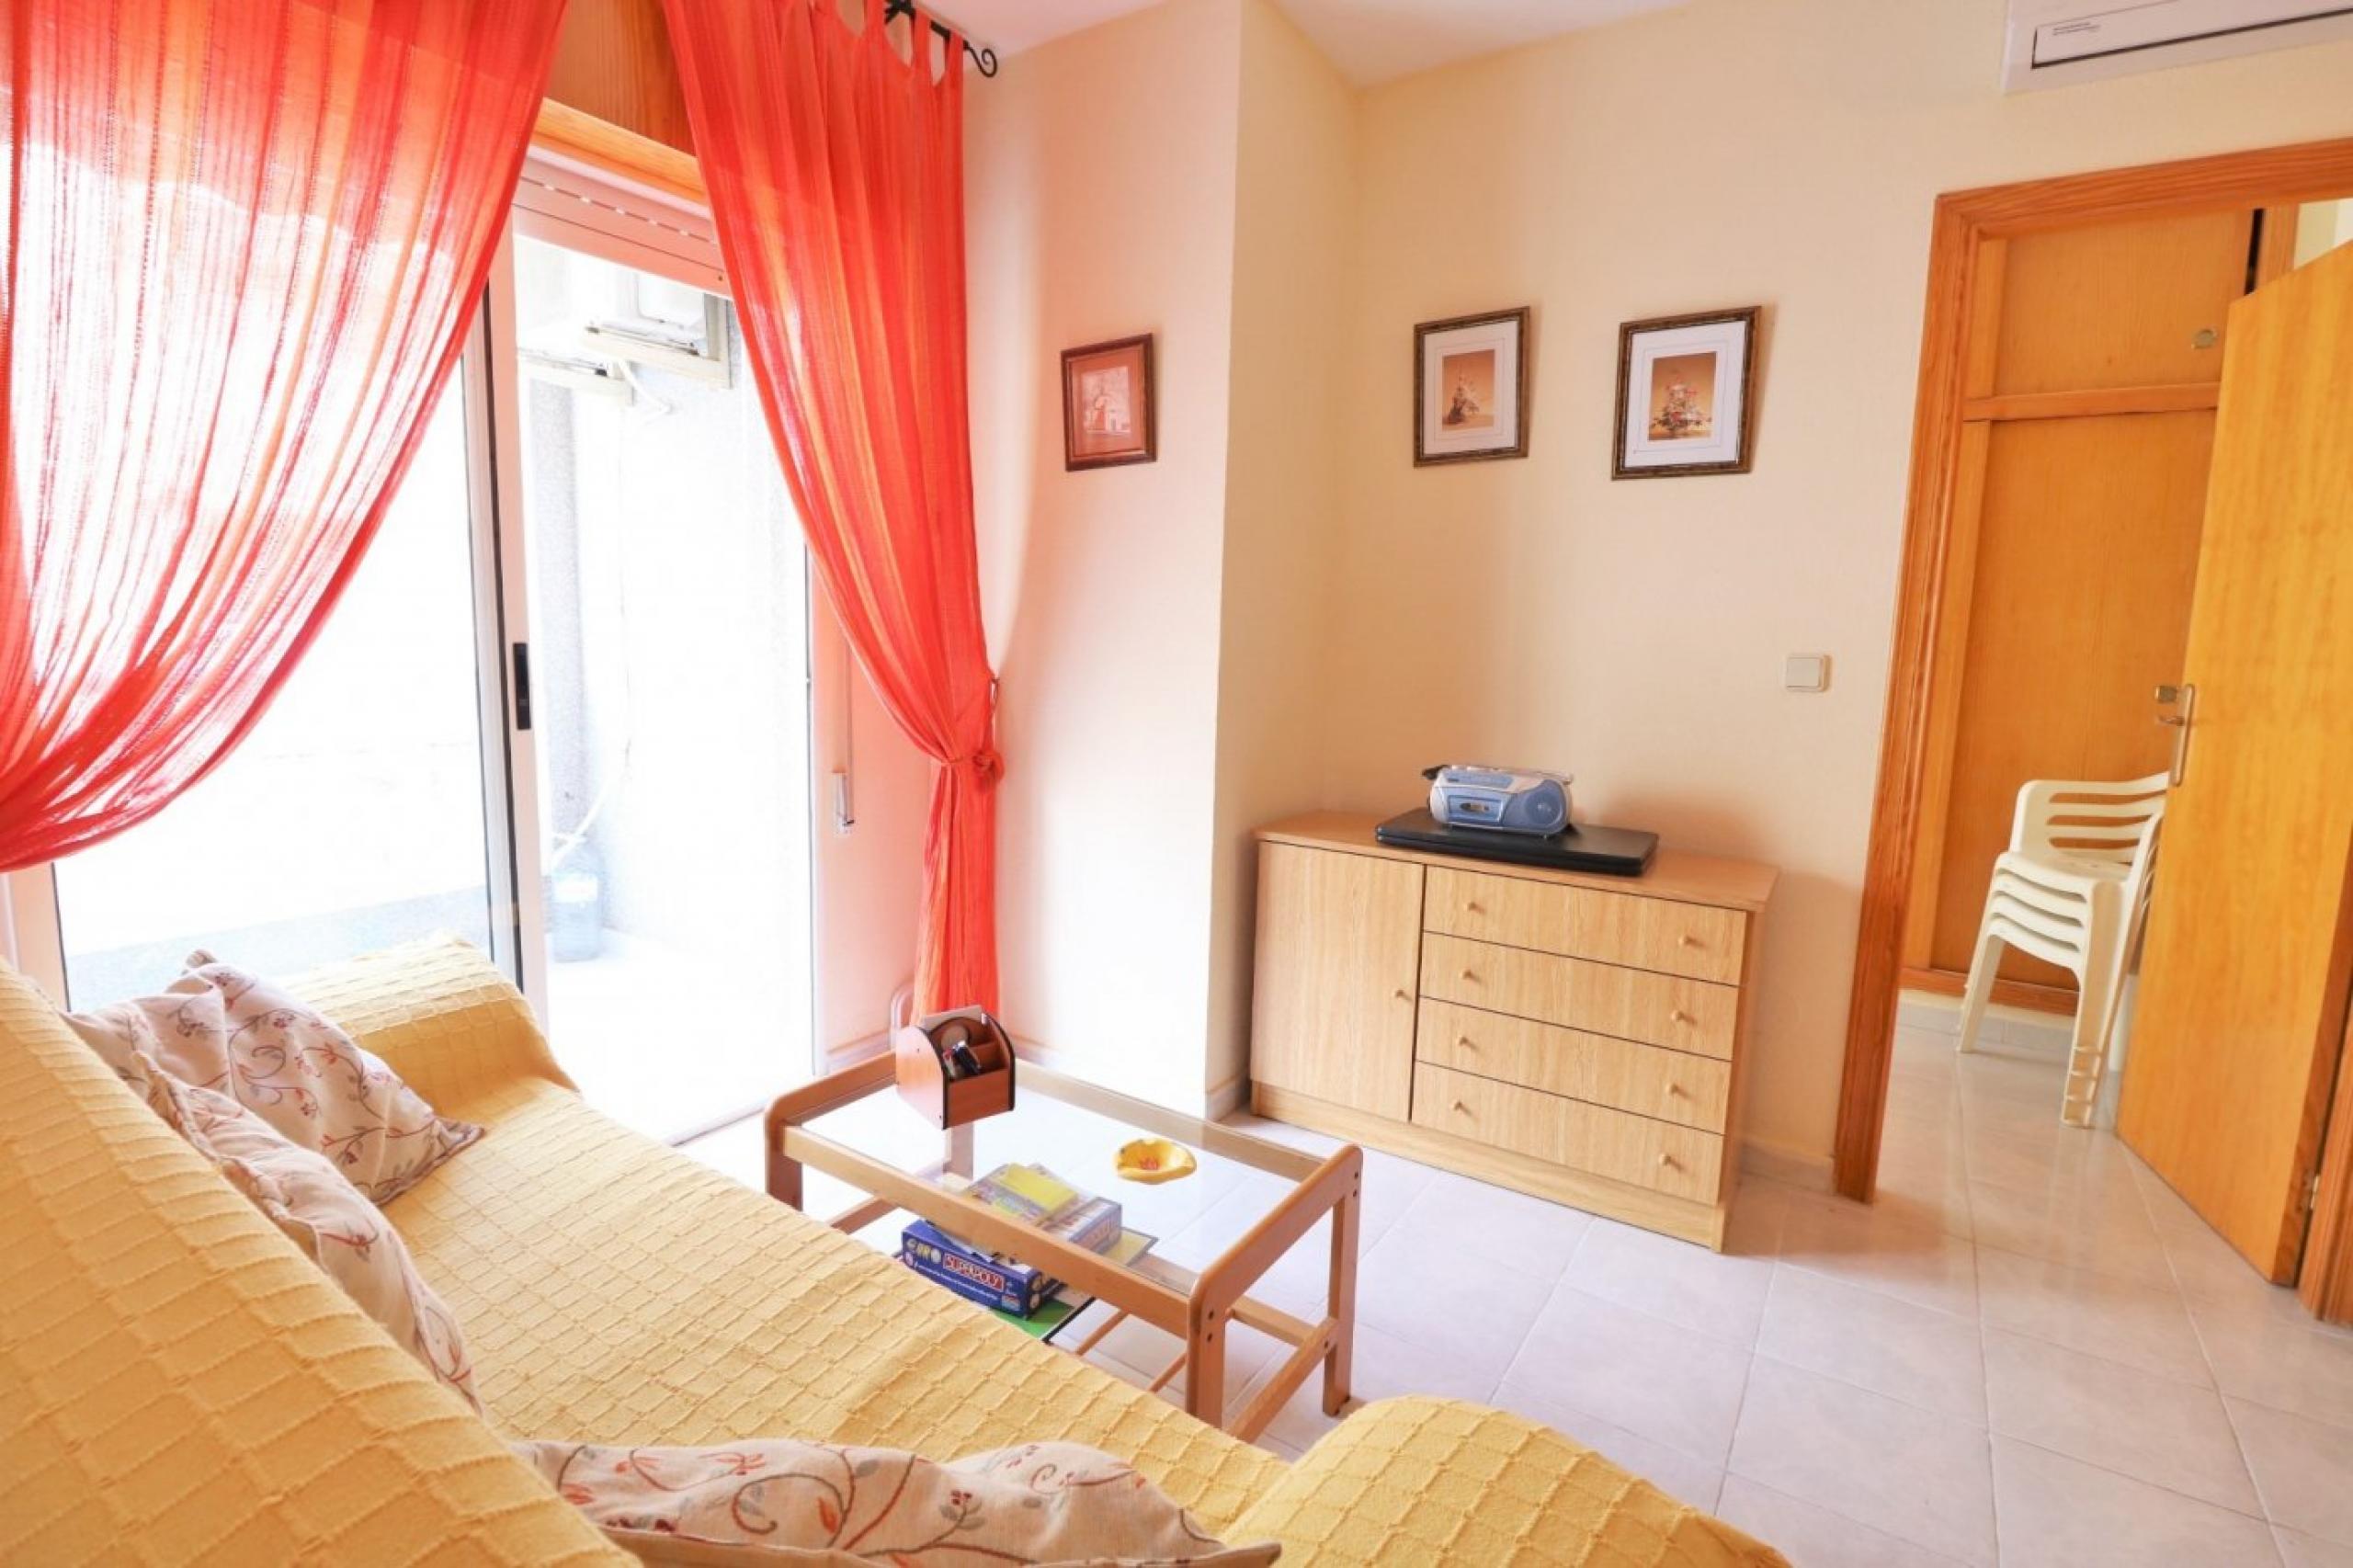 Appartement 3 chambres près de la plage des Nã-Ufragos